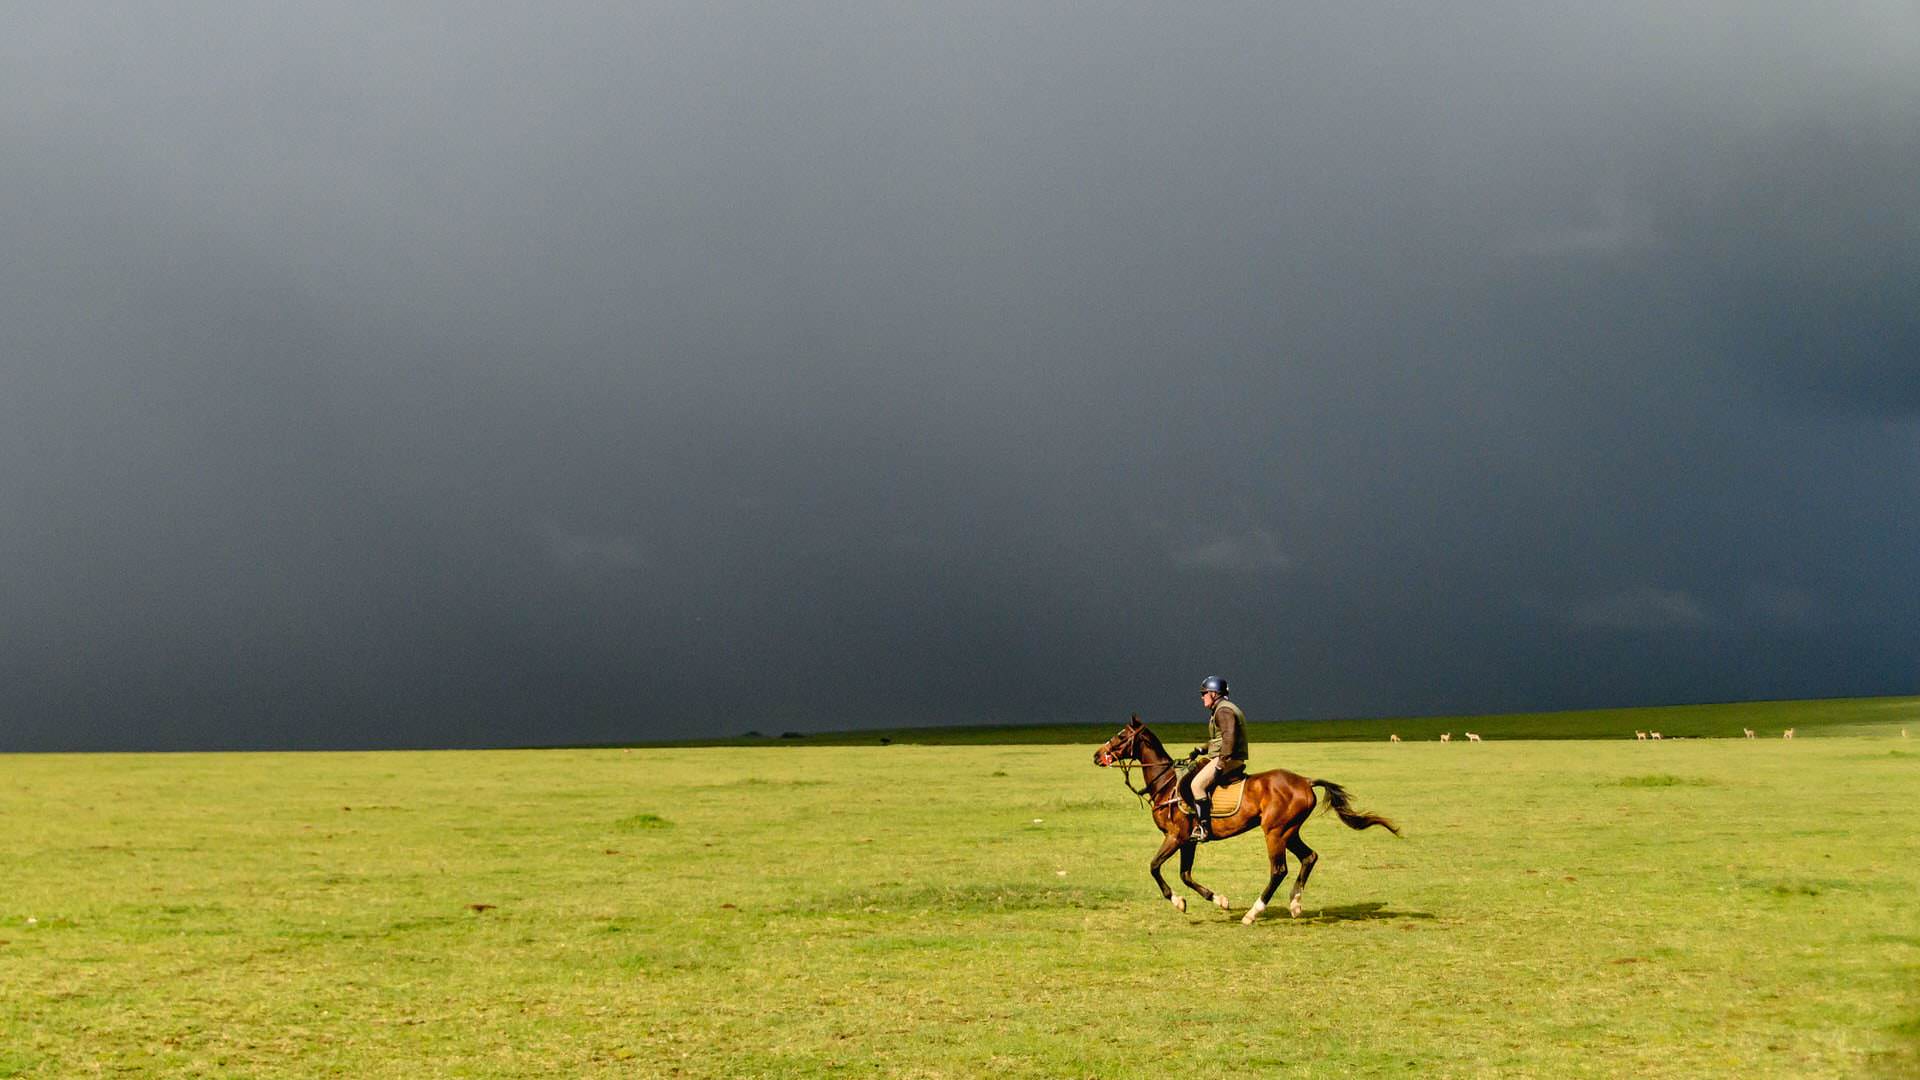 Dark skies with lone horse rider on the Serengeti Plains